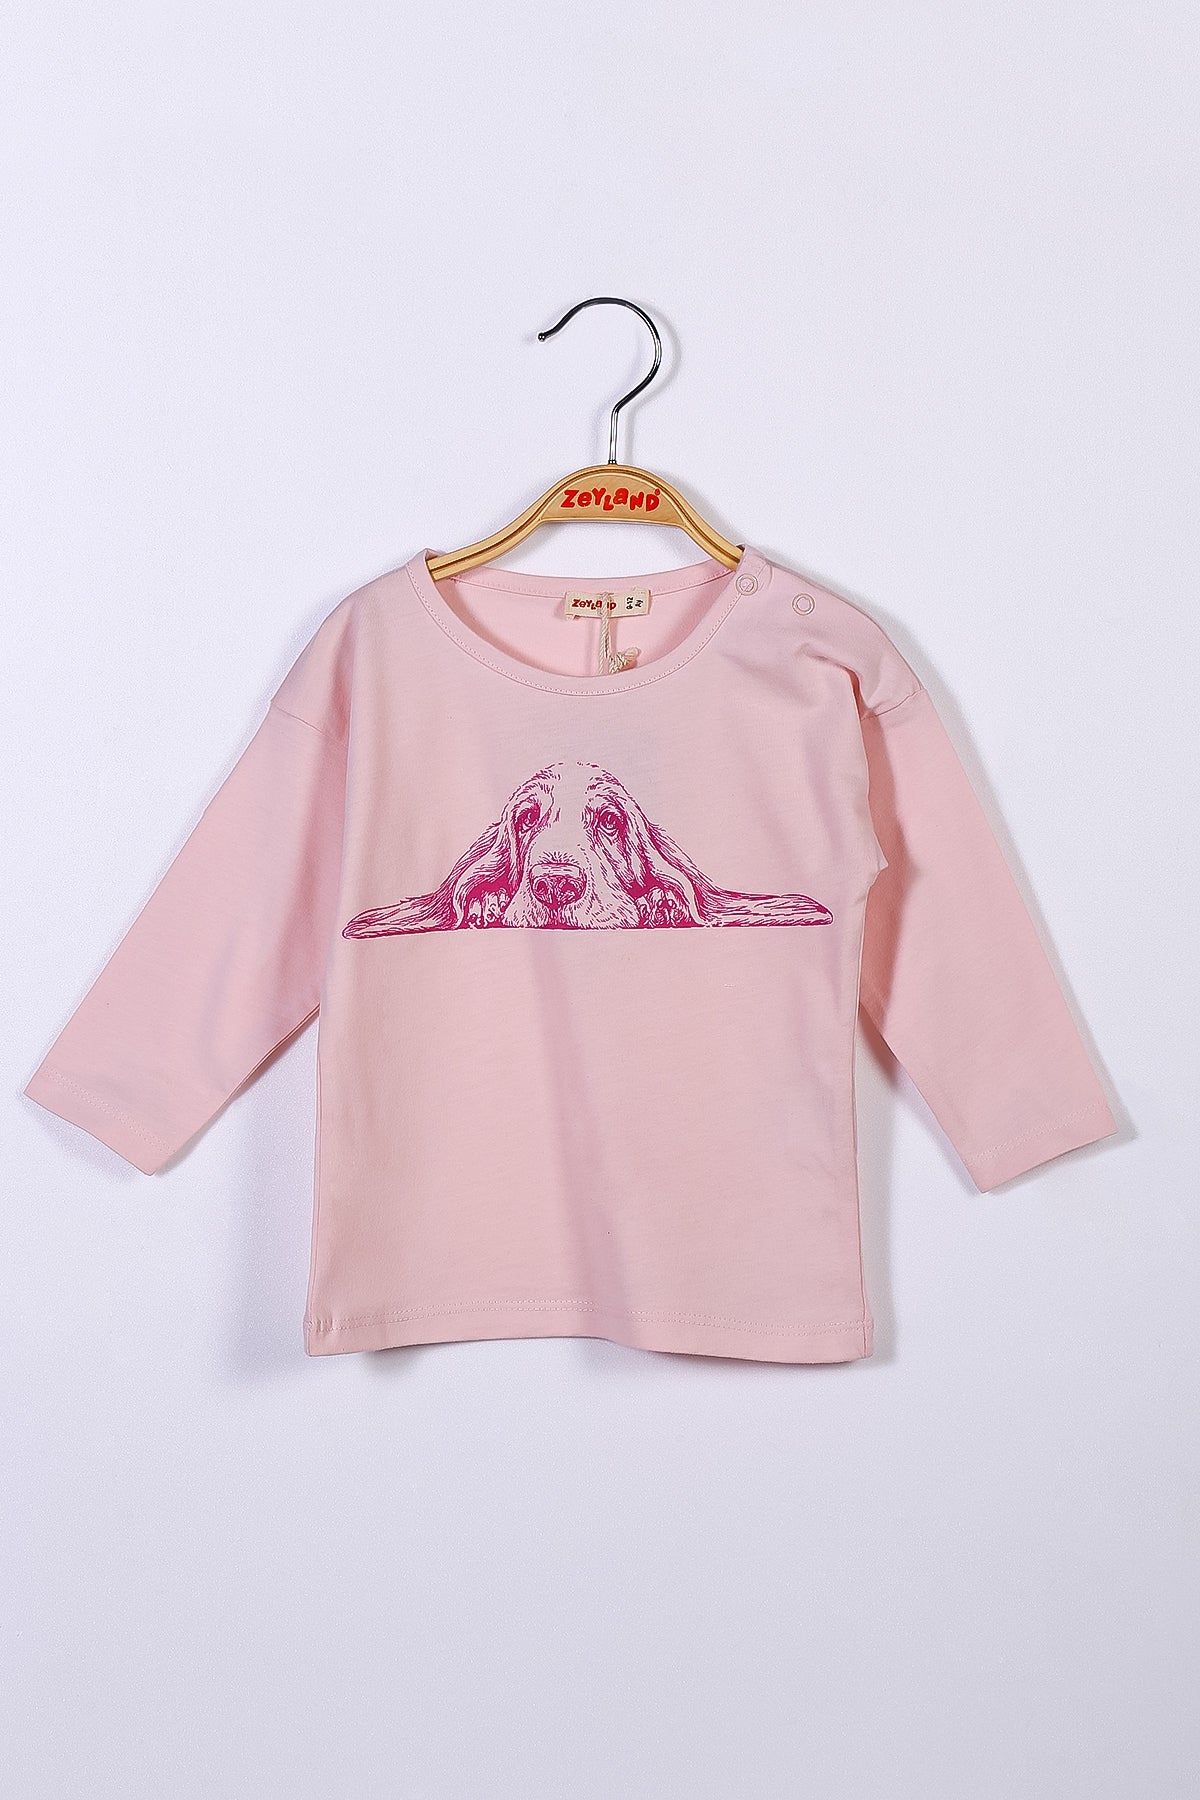 Kız Bebek Baskılı T-Shirt (9ay-4yaş)-0